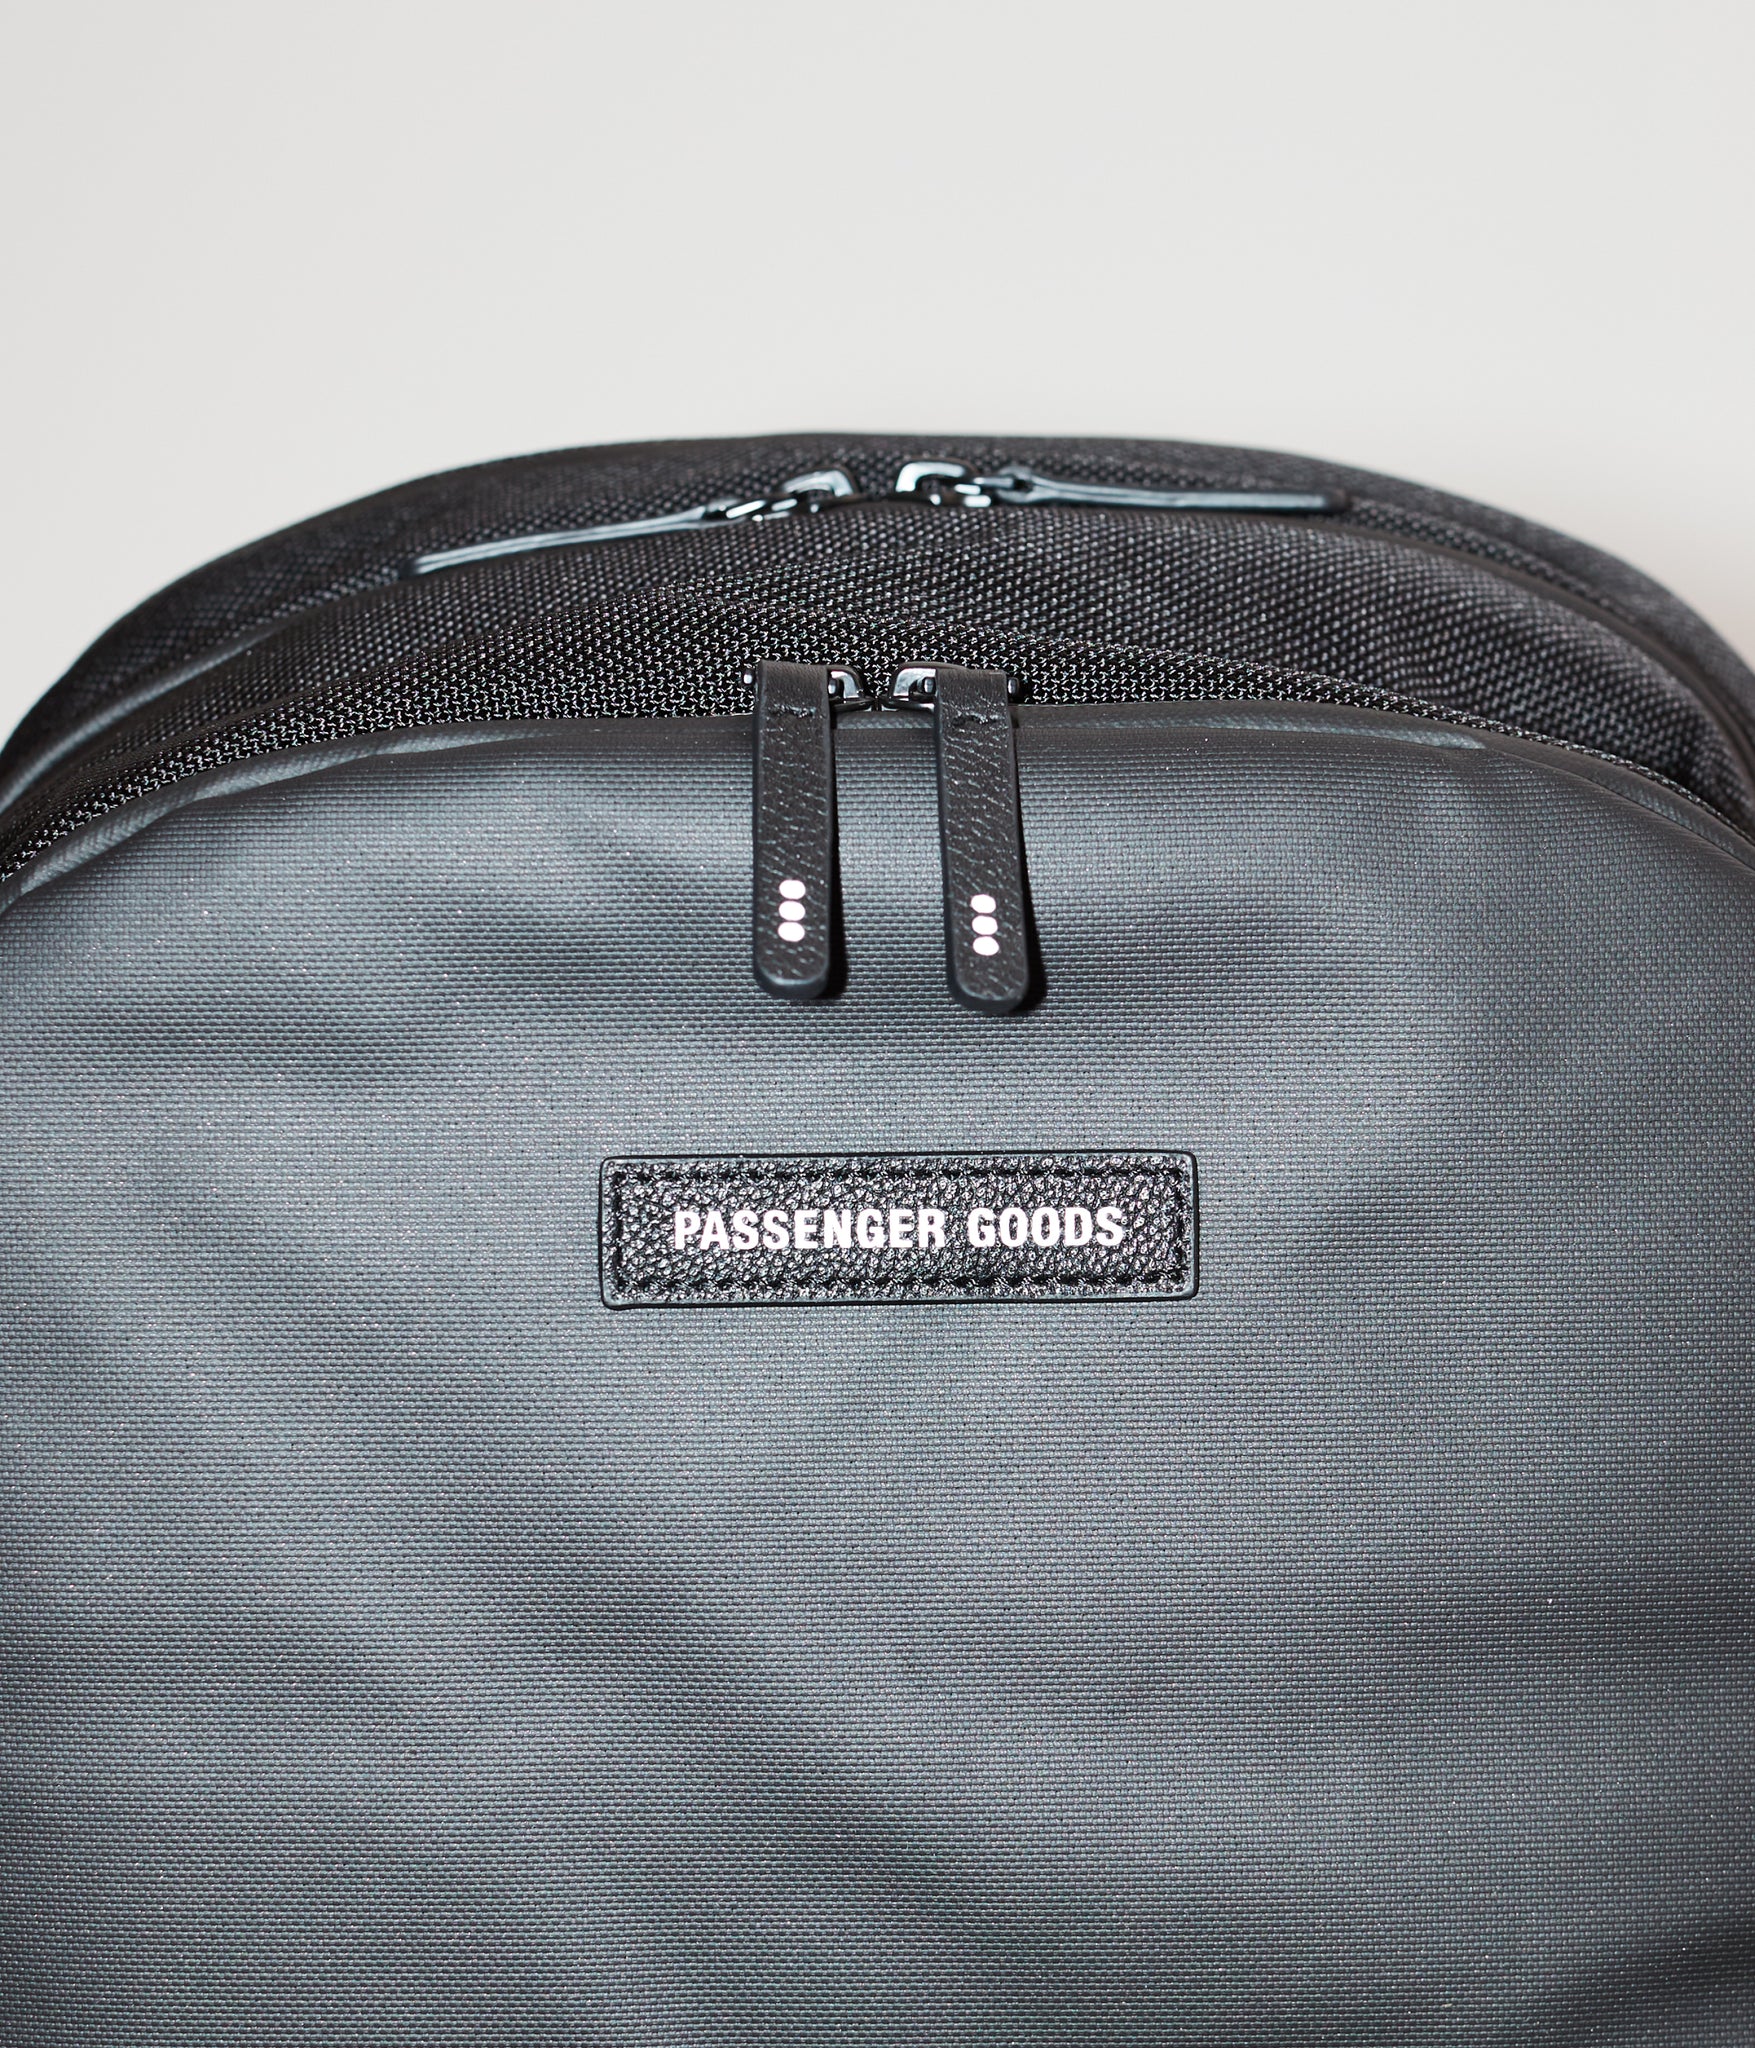 Weekender Backpack in Black